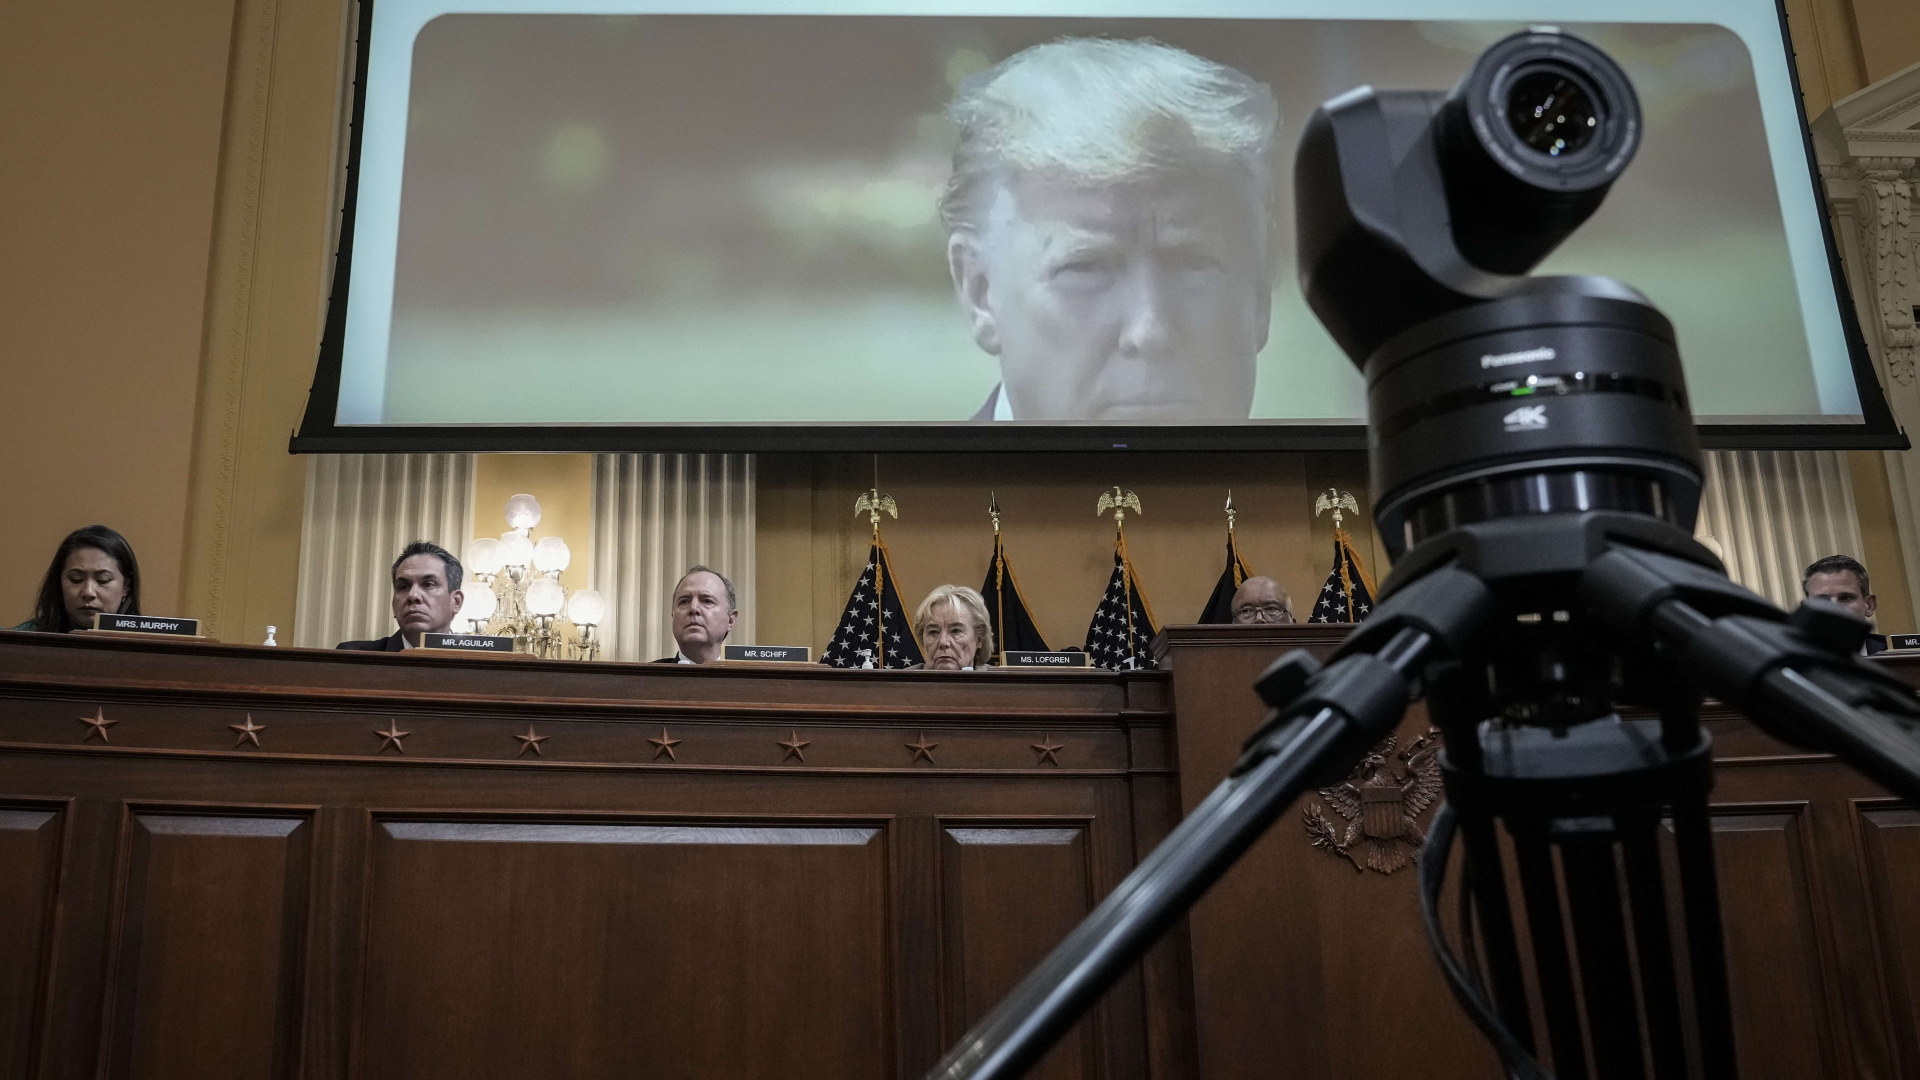 Videomaterial von Ex-Präsident Trump wird im Kapitol-Untersuchungsausschuss gezeigt | AFP